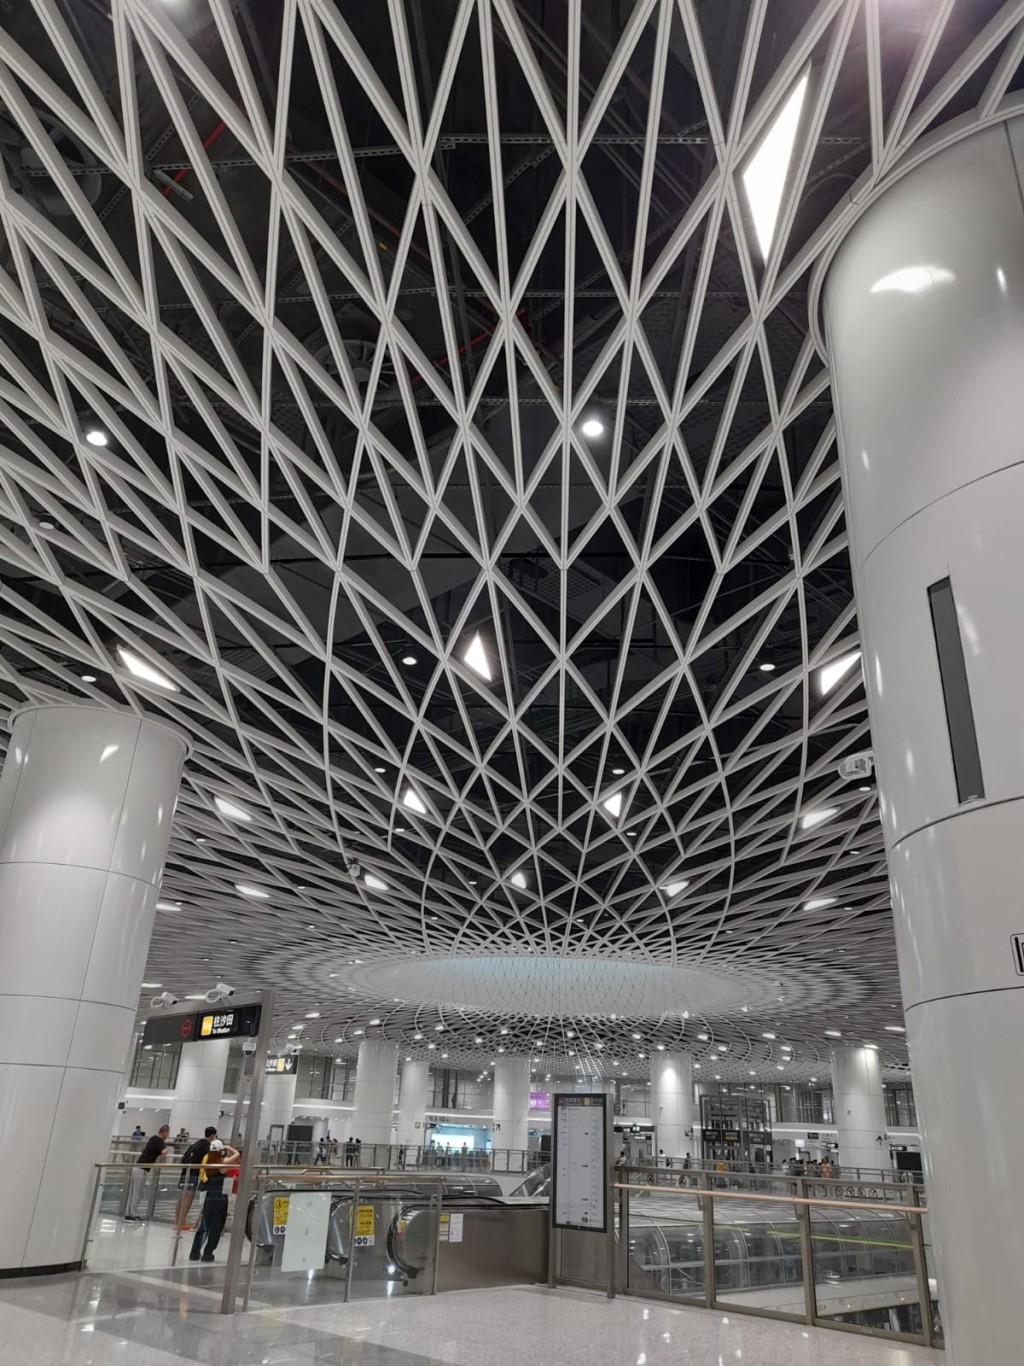 深圳地鐵崗廈北站有深圳最美地鐵站之稱。